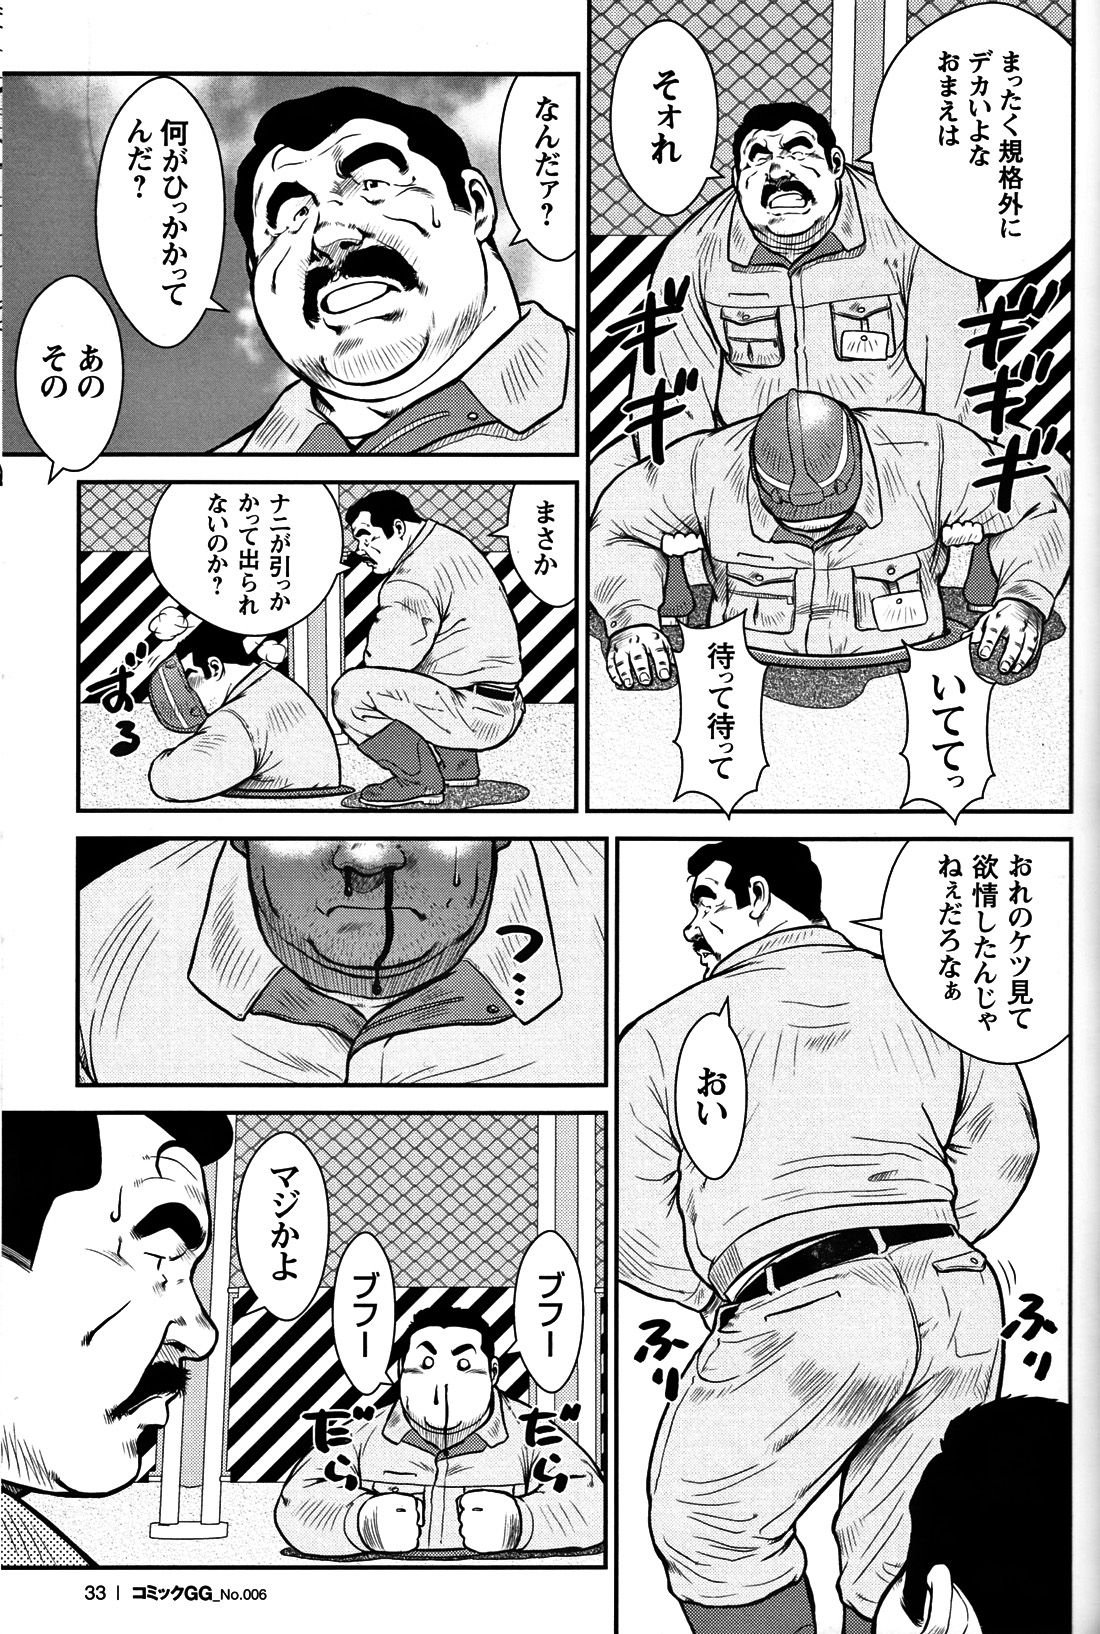 Comic G-men Gaho No. 06 Nikutai Roudousha page 30 full